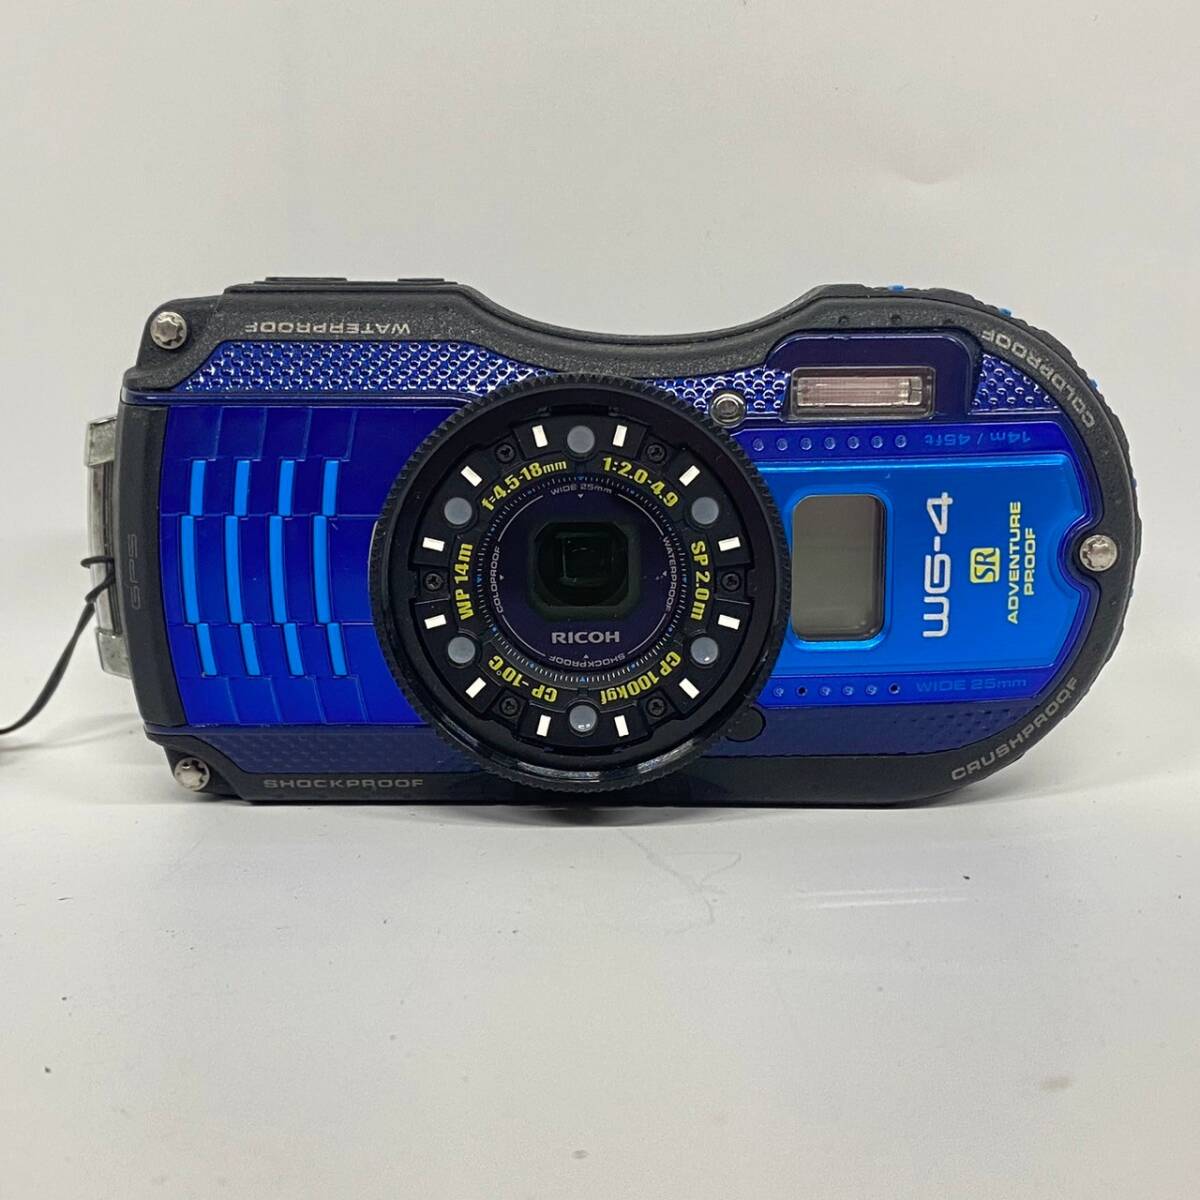 1 иен ~[ работоспособность не проверялась ] Ricoh RICOH WG-4 GPS f=4.5-18mm 1:2.0-4.9 водонепроницаемый компактный цифровой фотоаппарат голубой принадлежности есть G180131